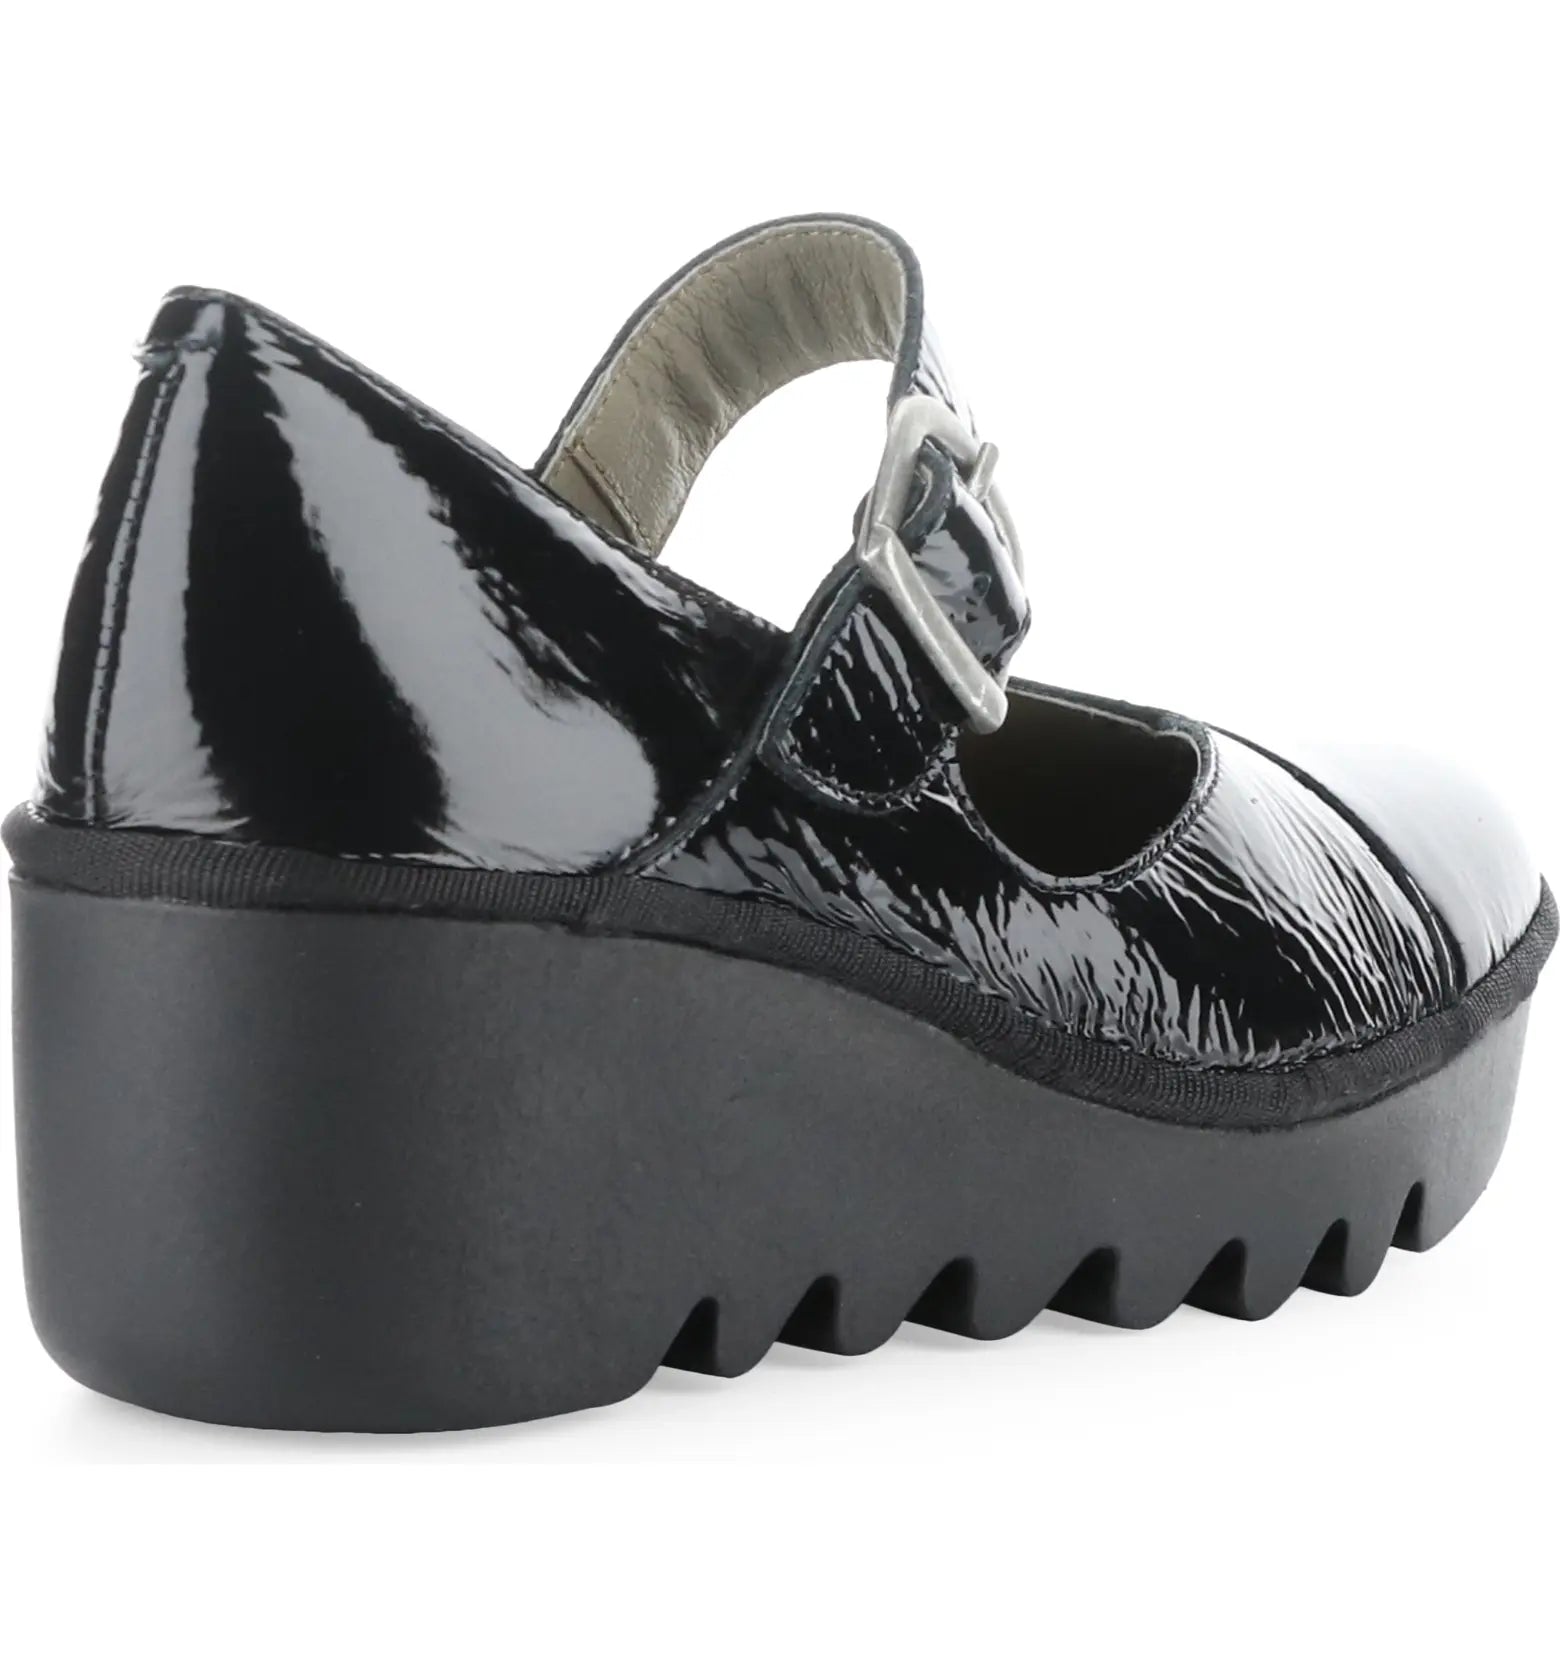 Fly Lodon "Baxe" Black - Wedge Shoe